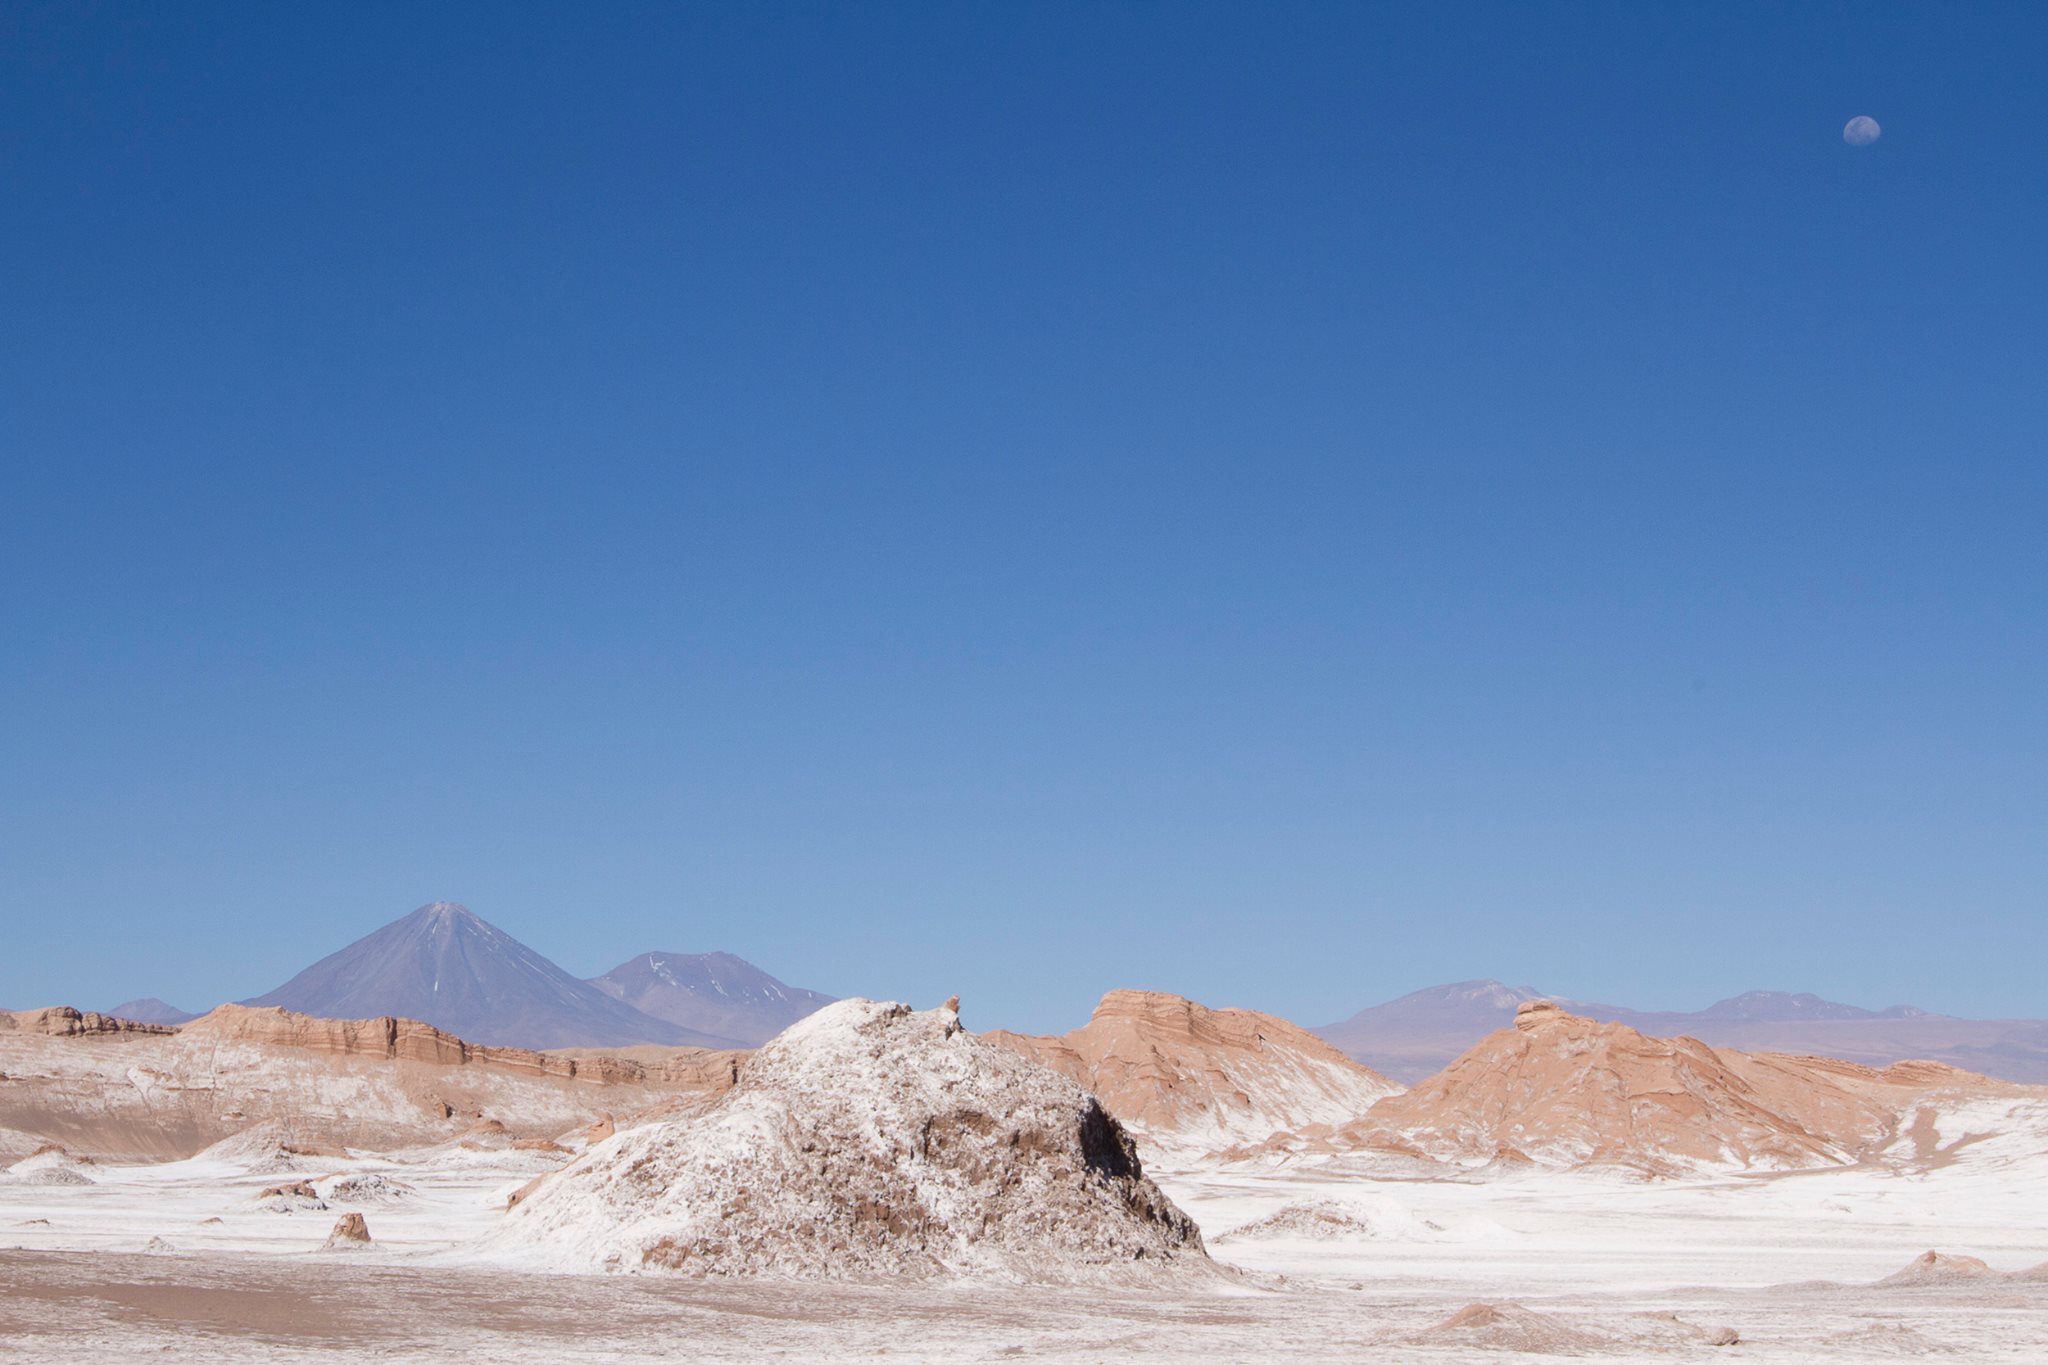 Moon Valley in the Atacama Desert. Photo: Madhuri Chowdhury